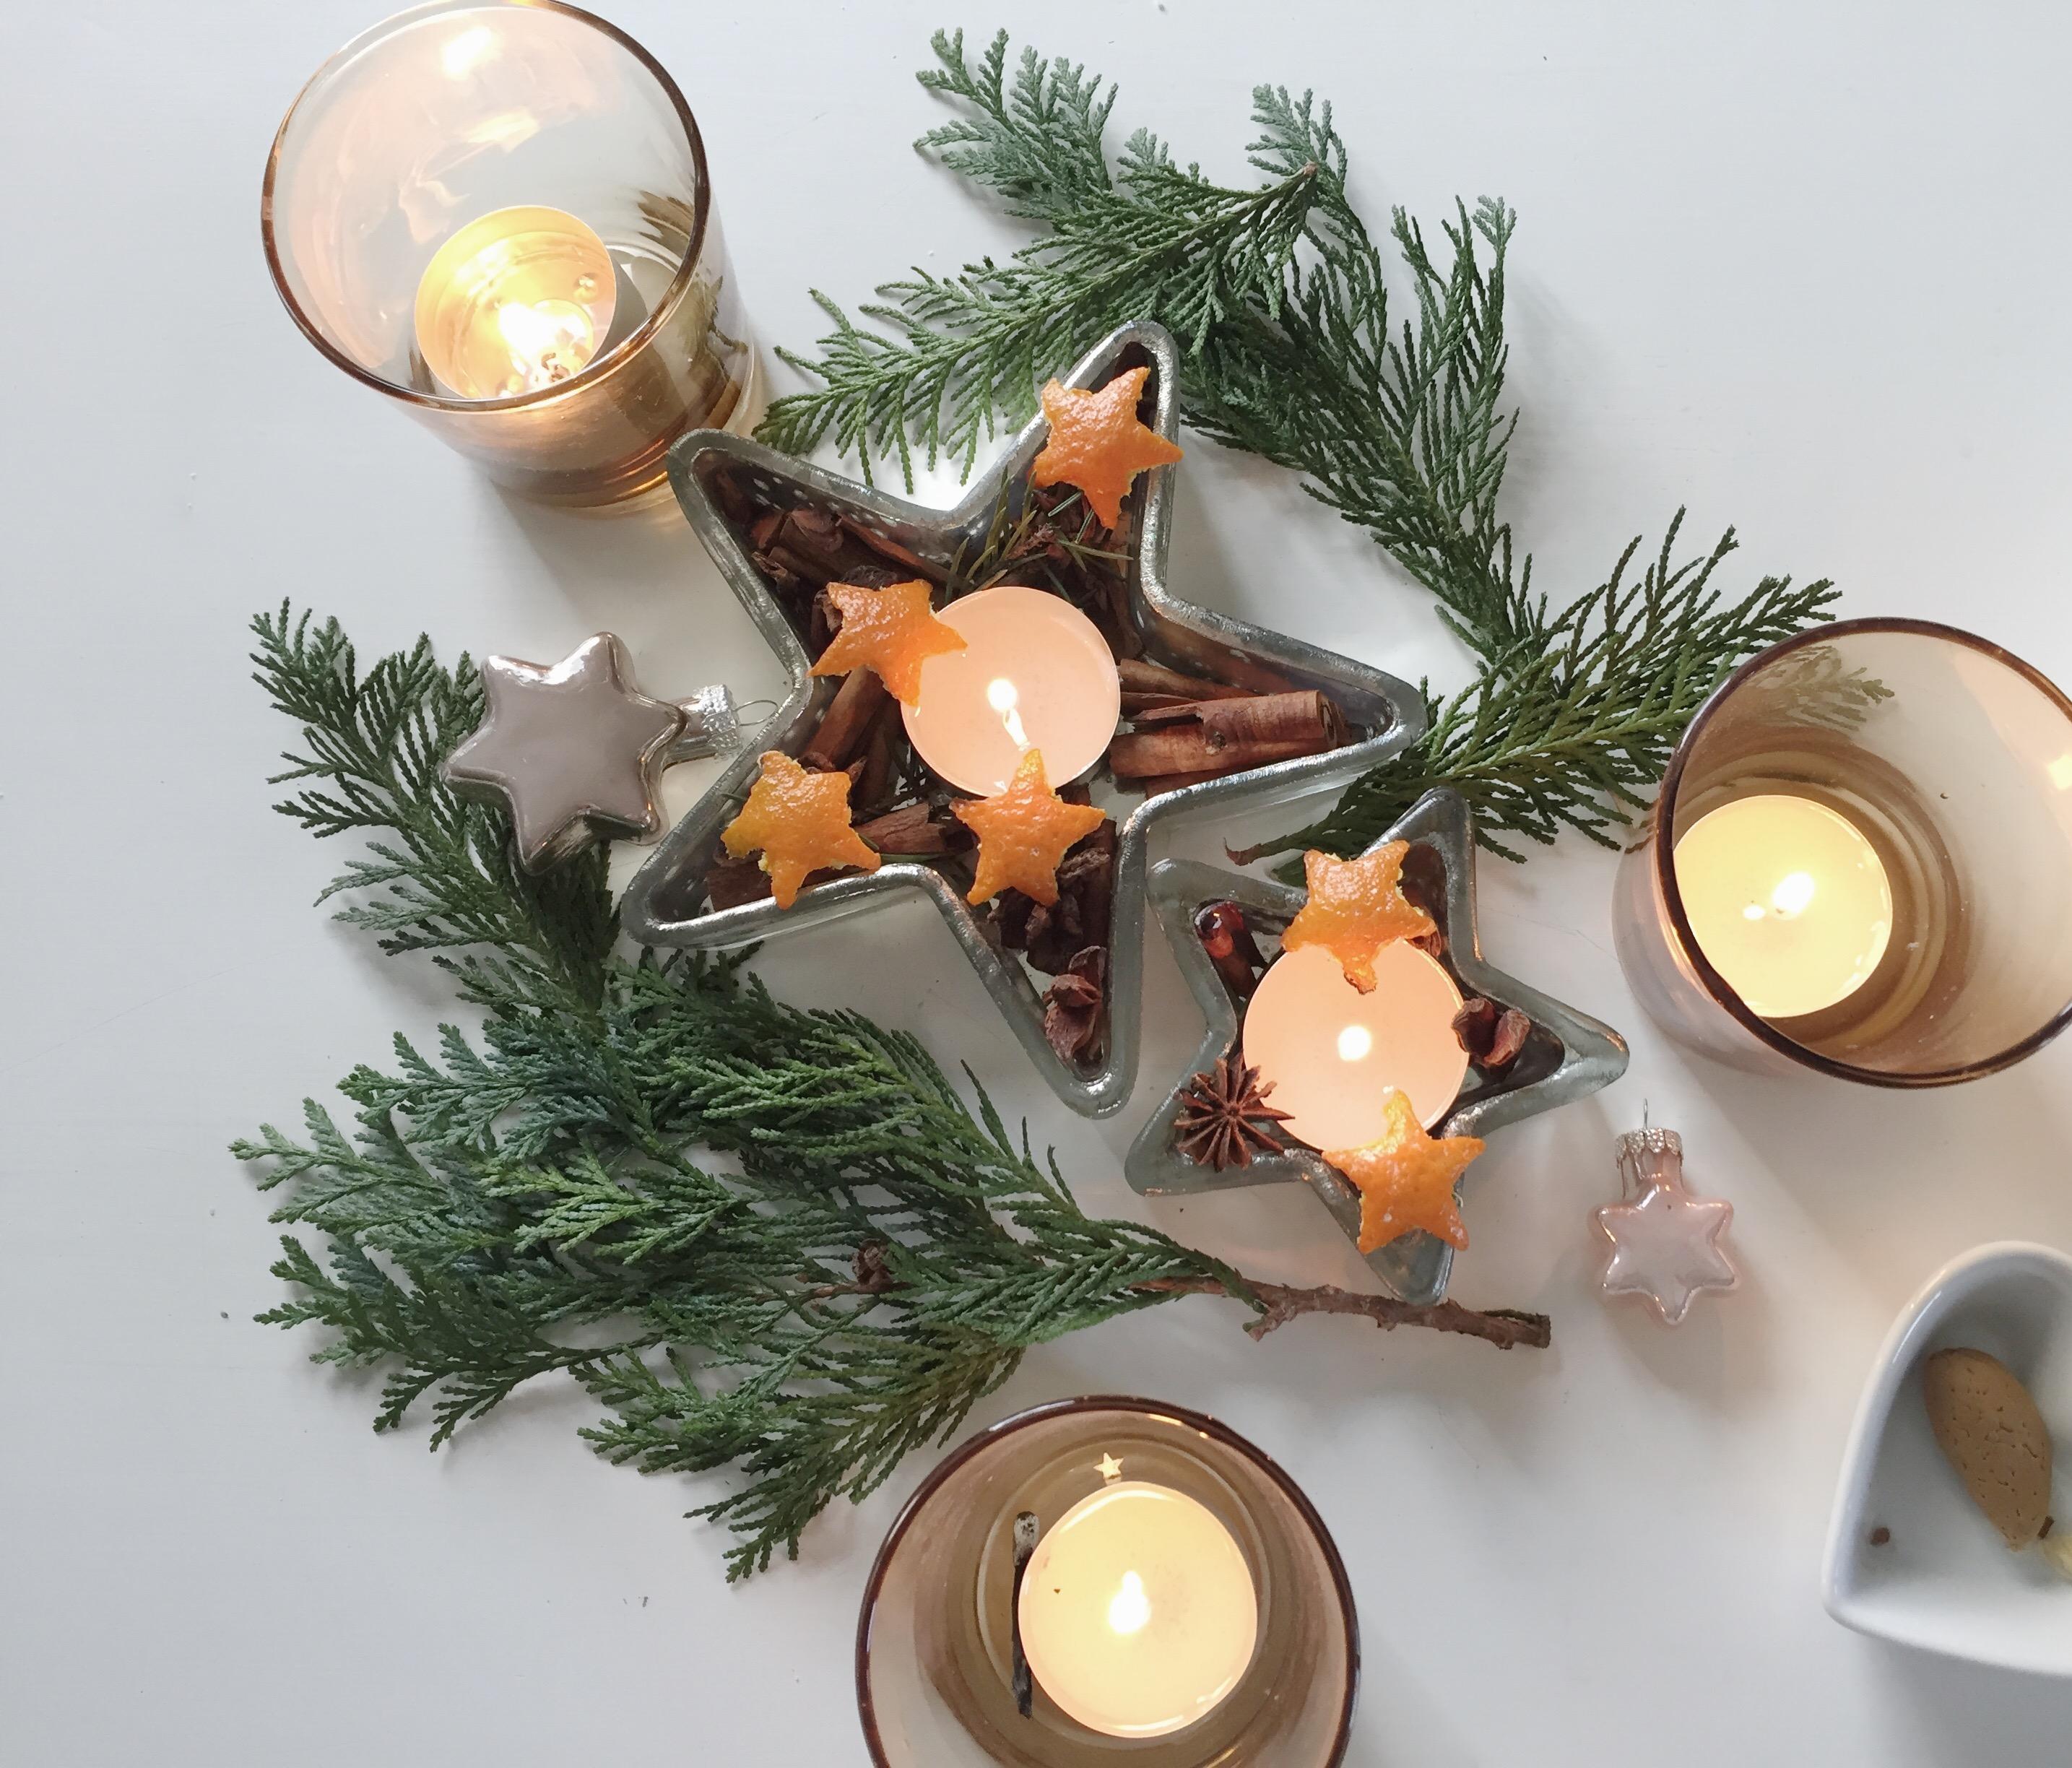 Weihnachten ist Tannenbaum, Orangen und Zimt Duft, Leuchte und Gemütlichkeit.. #weihnachten #diy #weihnachtstisch #deko 